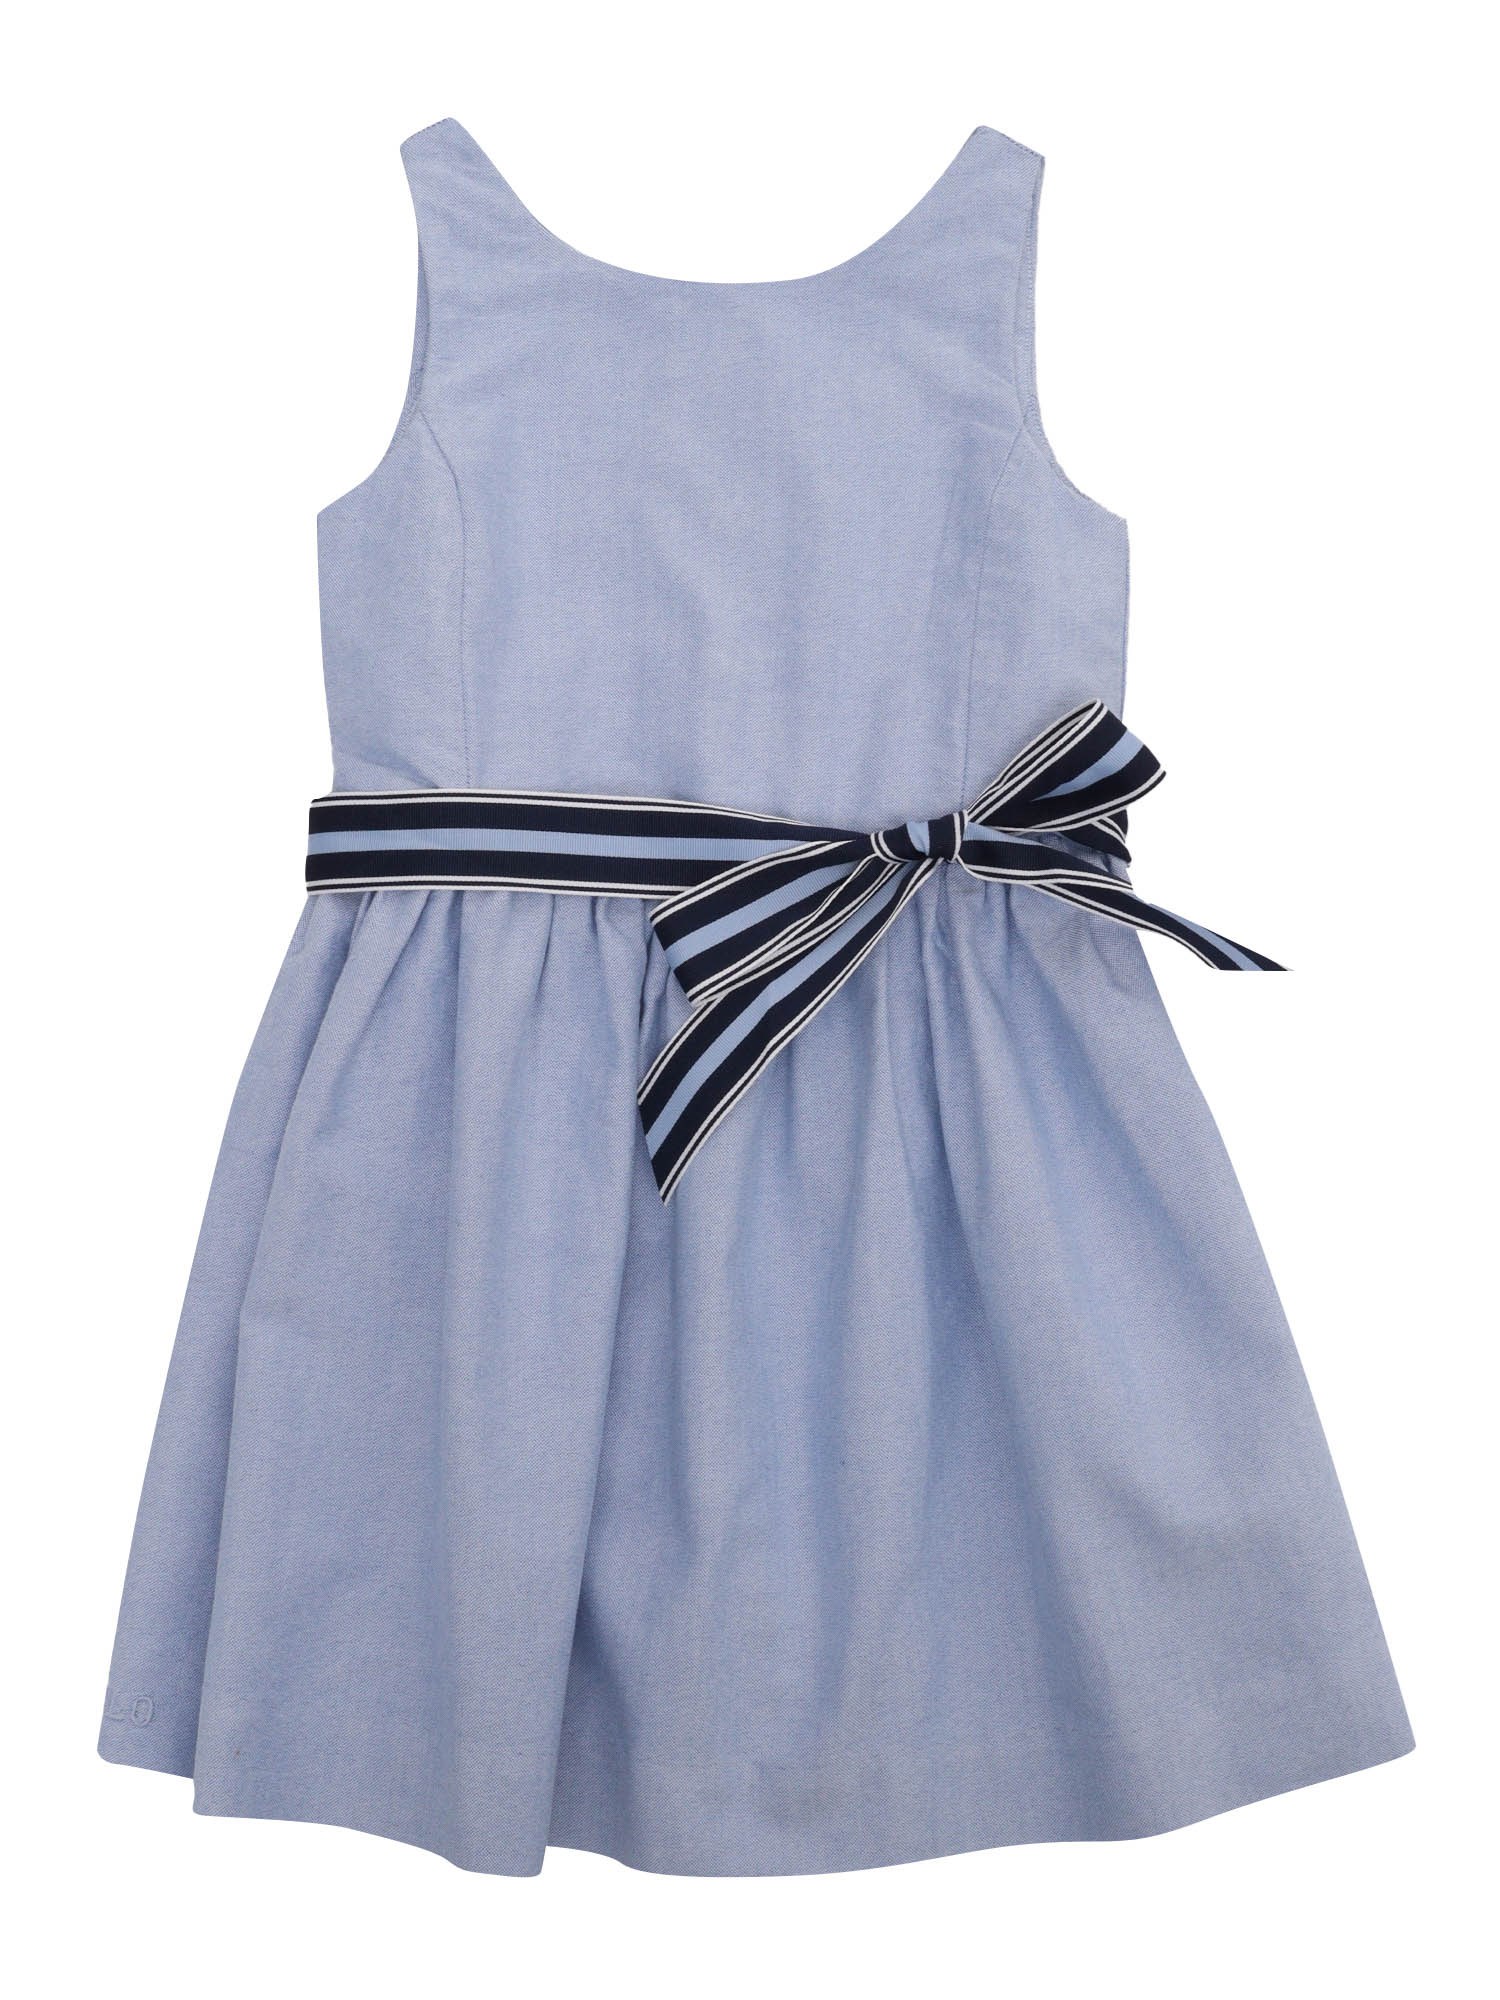 Polo Ralph Lauren Light Blue Dress